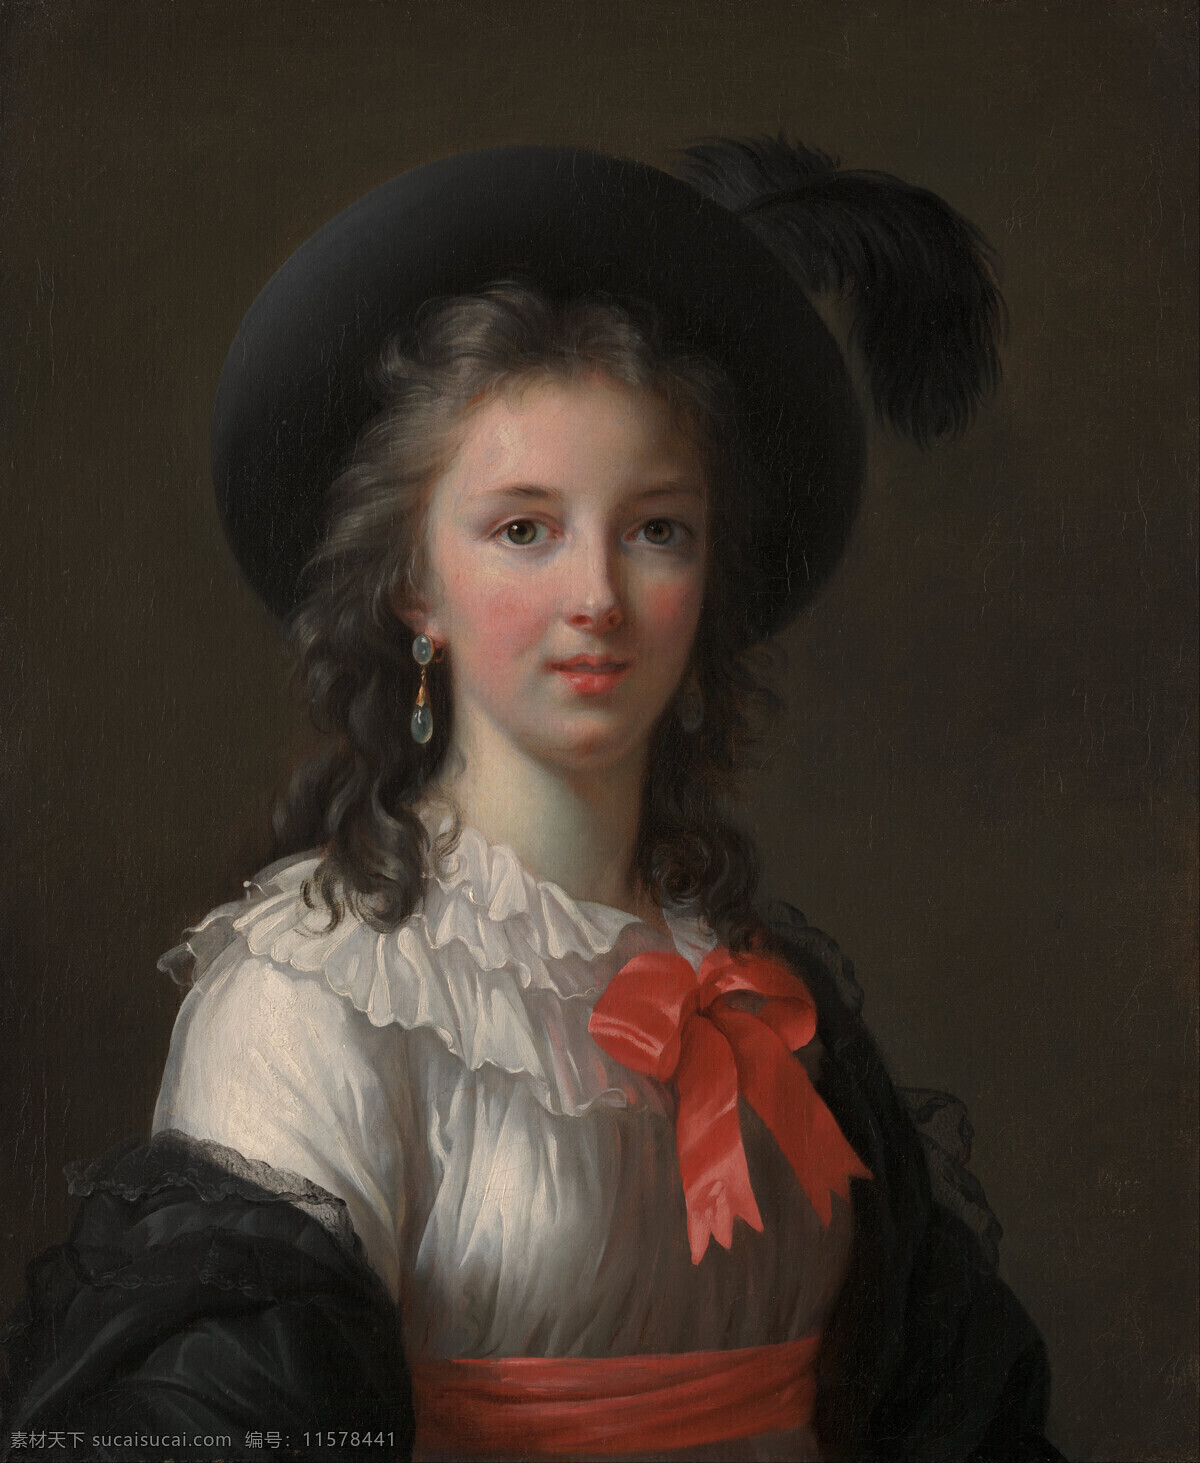 古典油画 绘画书法 文化艺术 油画 伊莉莎白 路易丝 维格 勒布隆 夫人 法国 著名 女画家 洛可可时代 宫庭画家 1755年 1842年 自画像 装饰素材